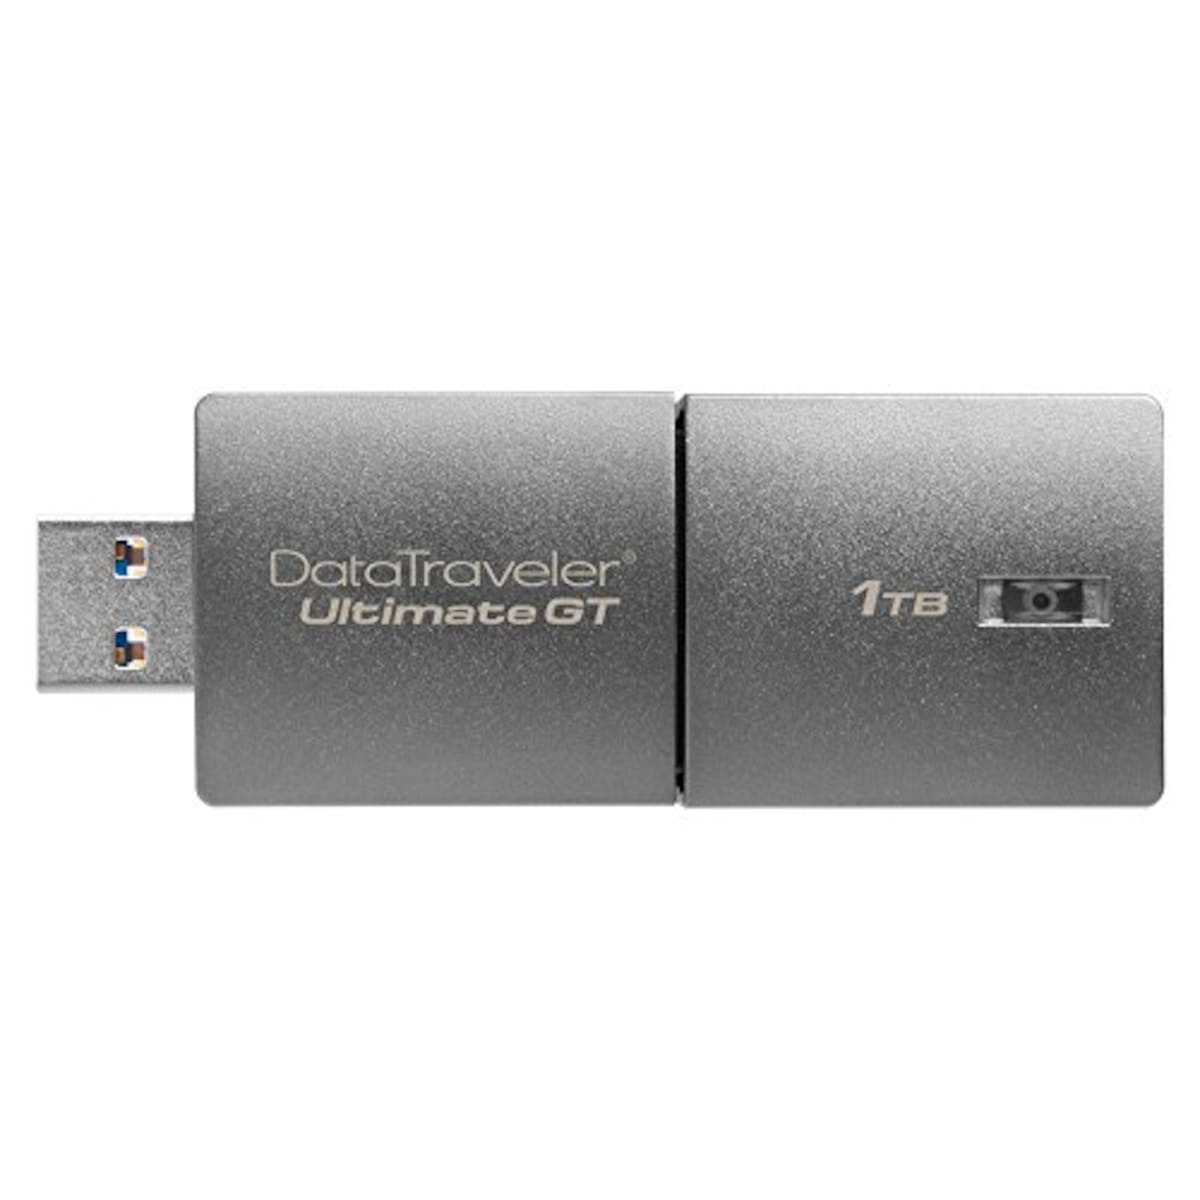 キングストン USBメモリ 1TB USB 3.1 Gen 1 DataTraveler Ultimate GT DTUGT